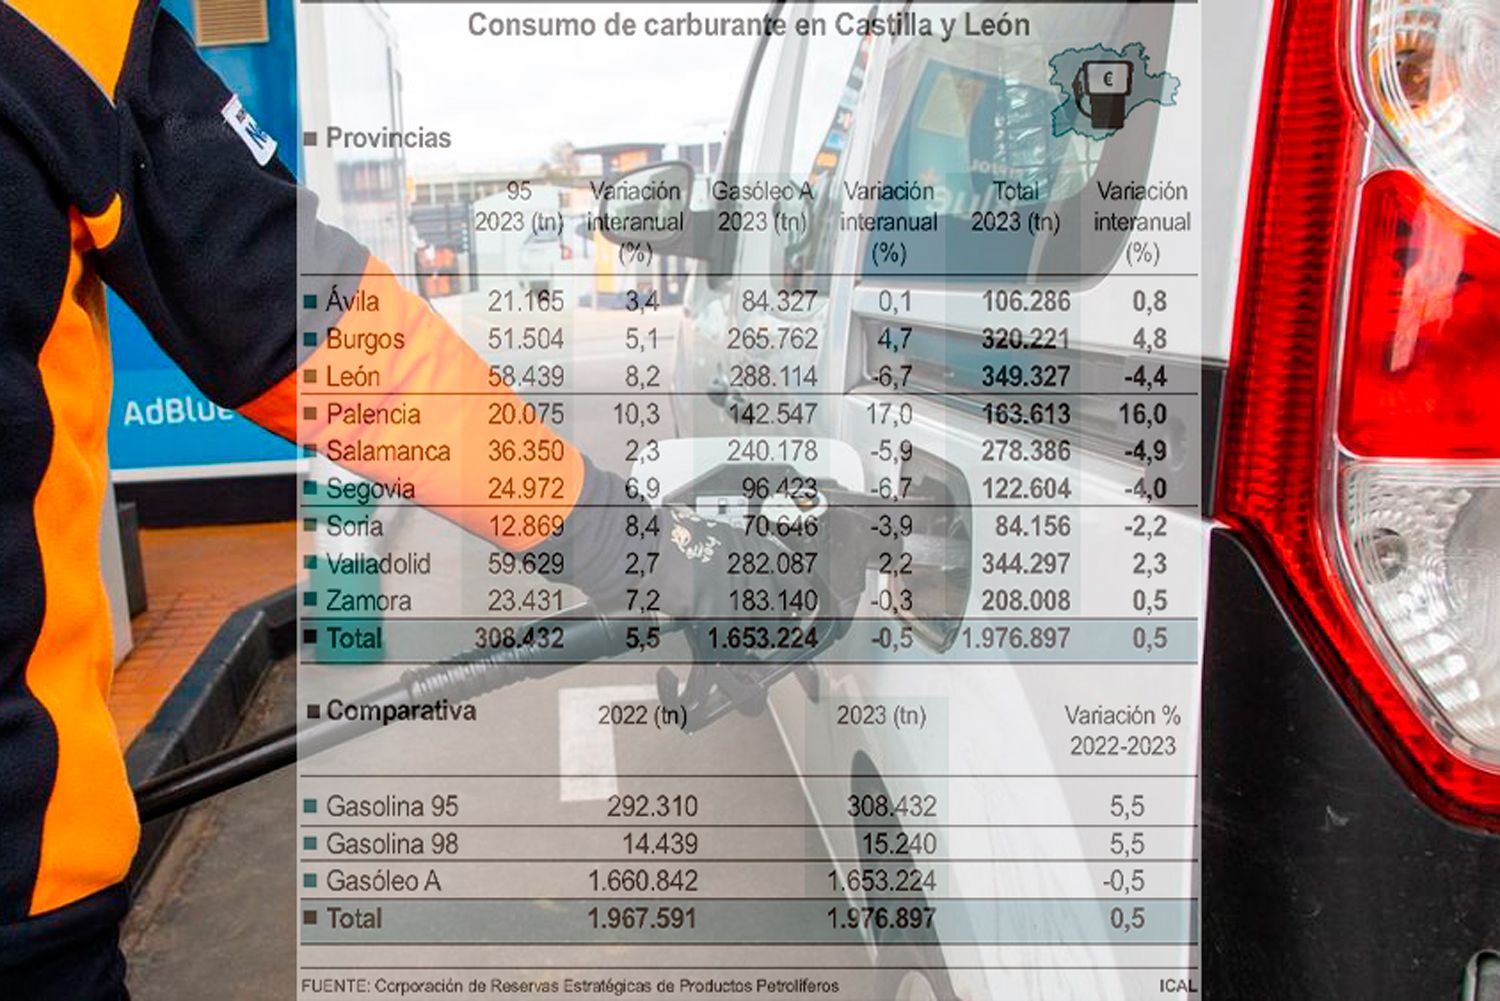 León fue la provincia de la Comunidad que más carburante consumió en 2023